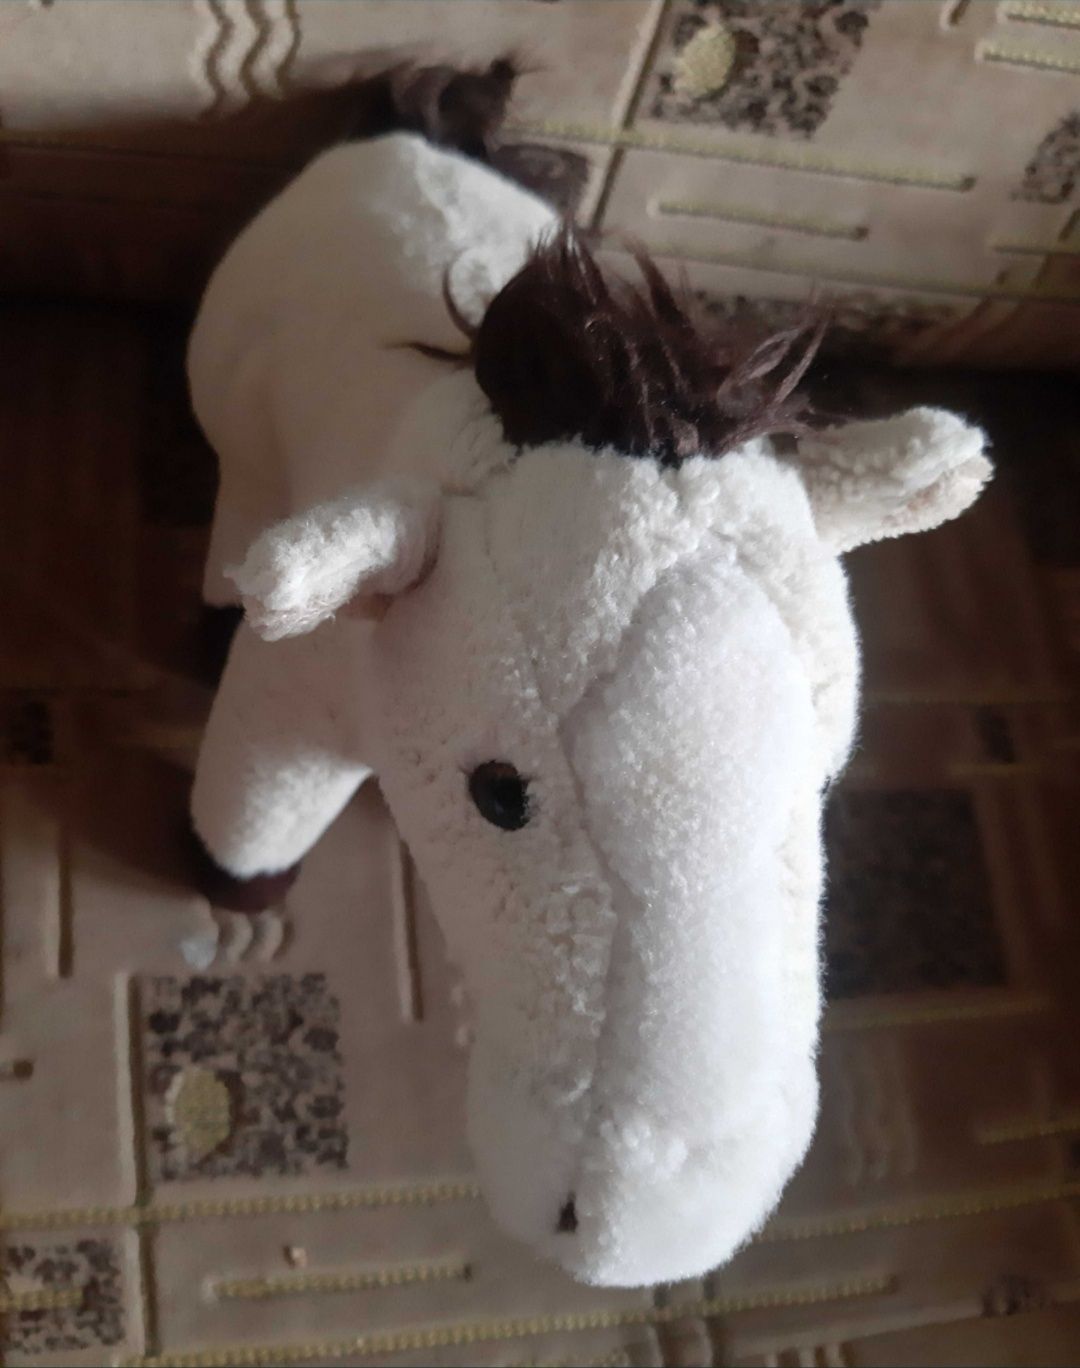 Лошадка с уздечкой седло Белая Лошадь Кінь лошади мягкая игрушка конь